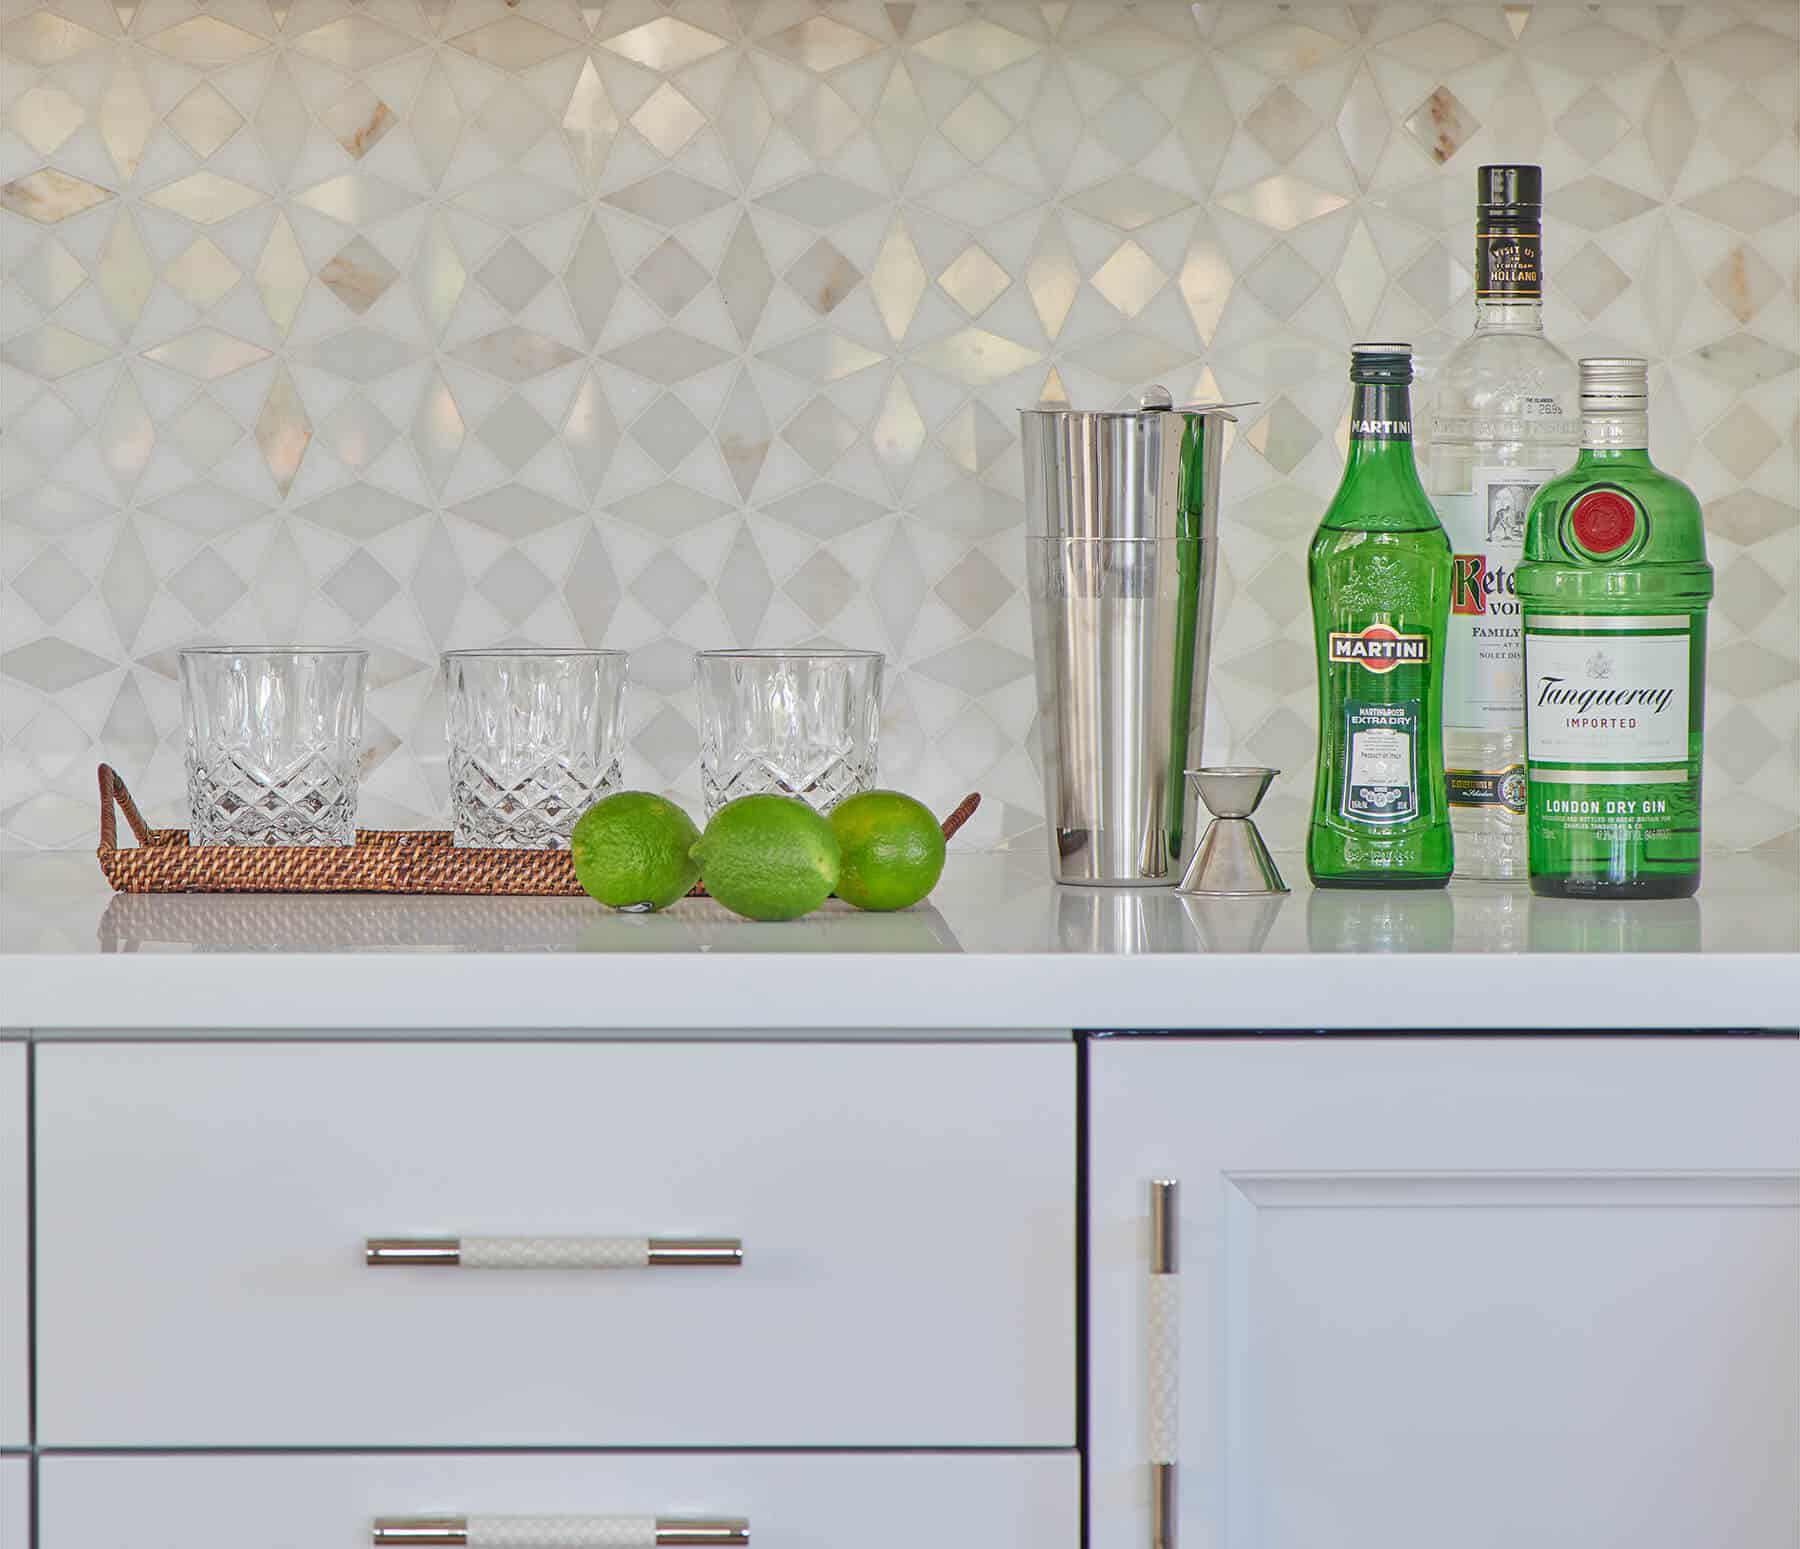 Nantucket, dining room bar cabinet and tile backsplash details